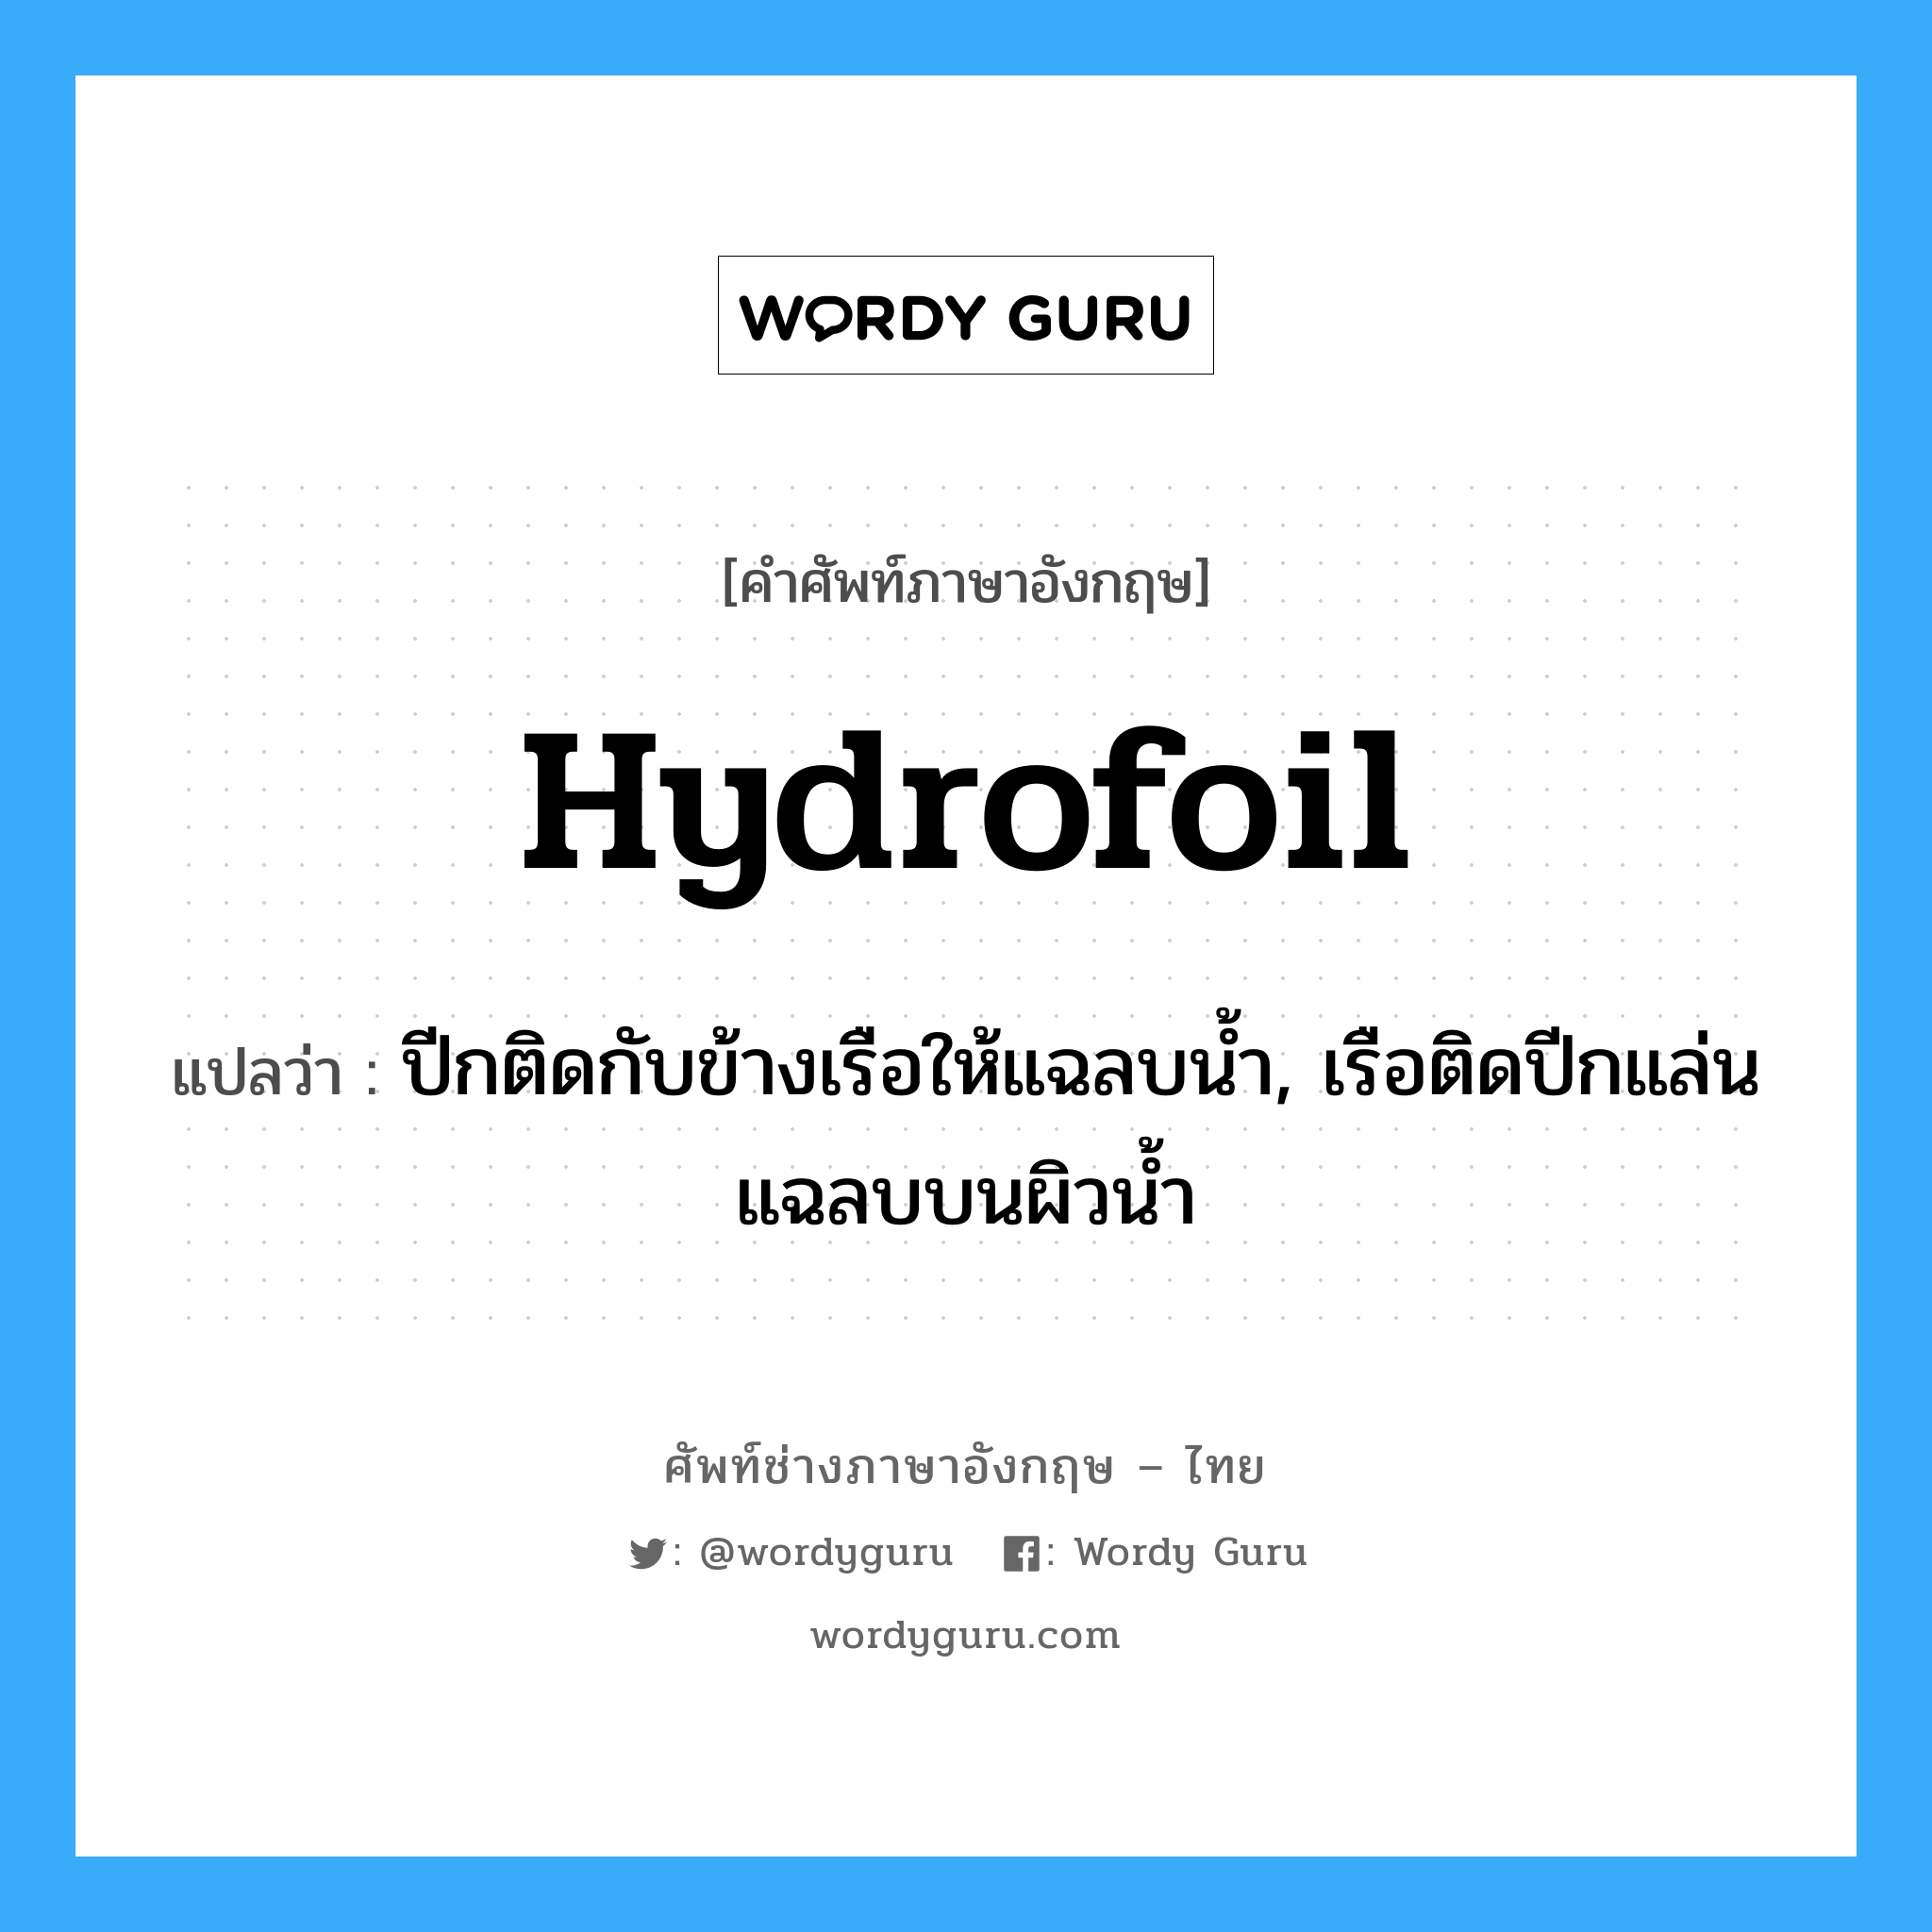 hydrofoil แปลว่า?, คำศัพท์ช่างภาษาอังกฤษ - ไทย hydrofoil คำศัพท์ภาษาอังกฤษ hydrofoil แปลว่า ปีกติดกับข้างเรือให้แฉลบน้ำ, เรือติดปีกแล่นแฉลบบนผิวน้ำ